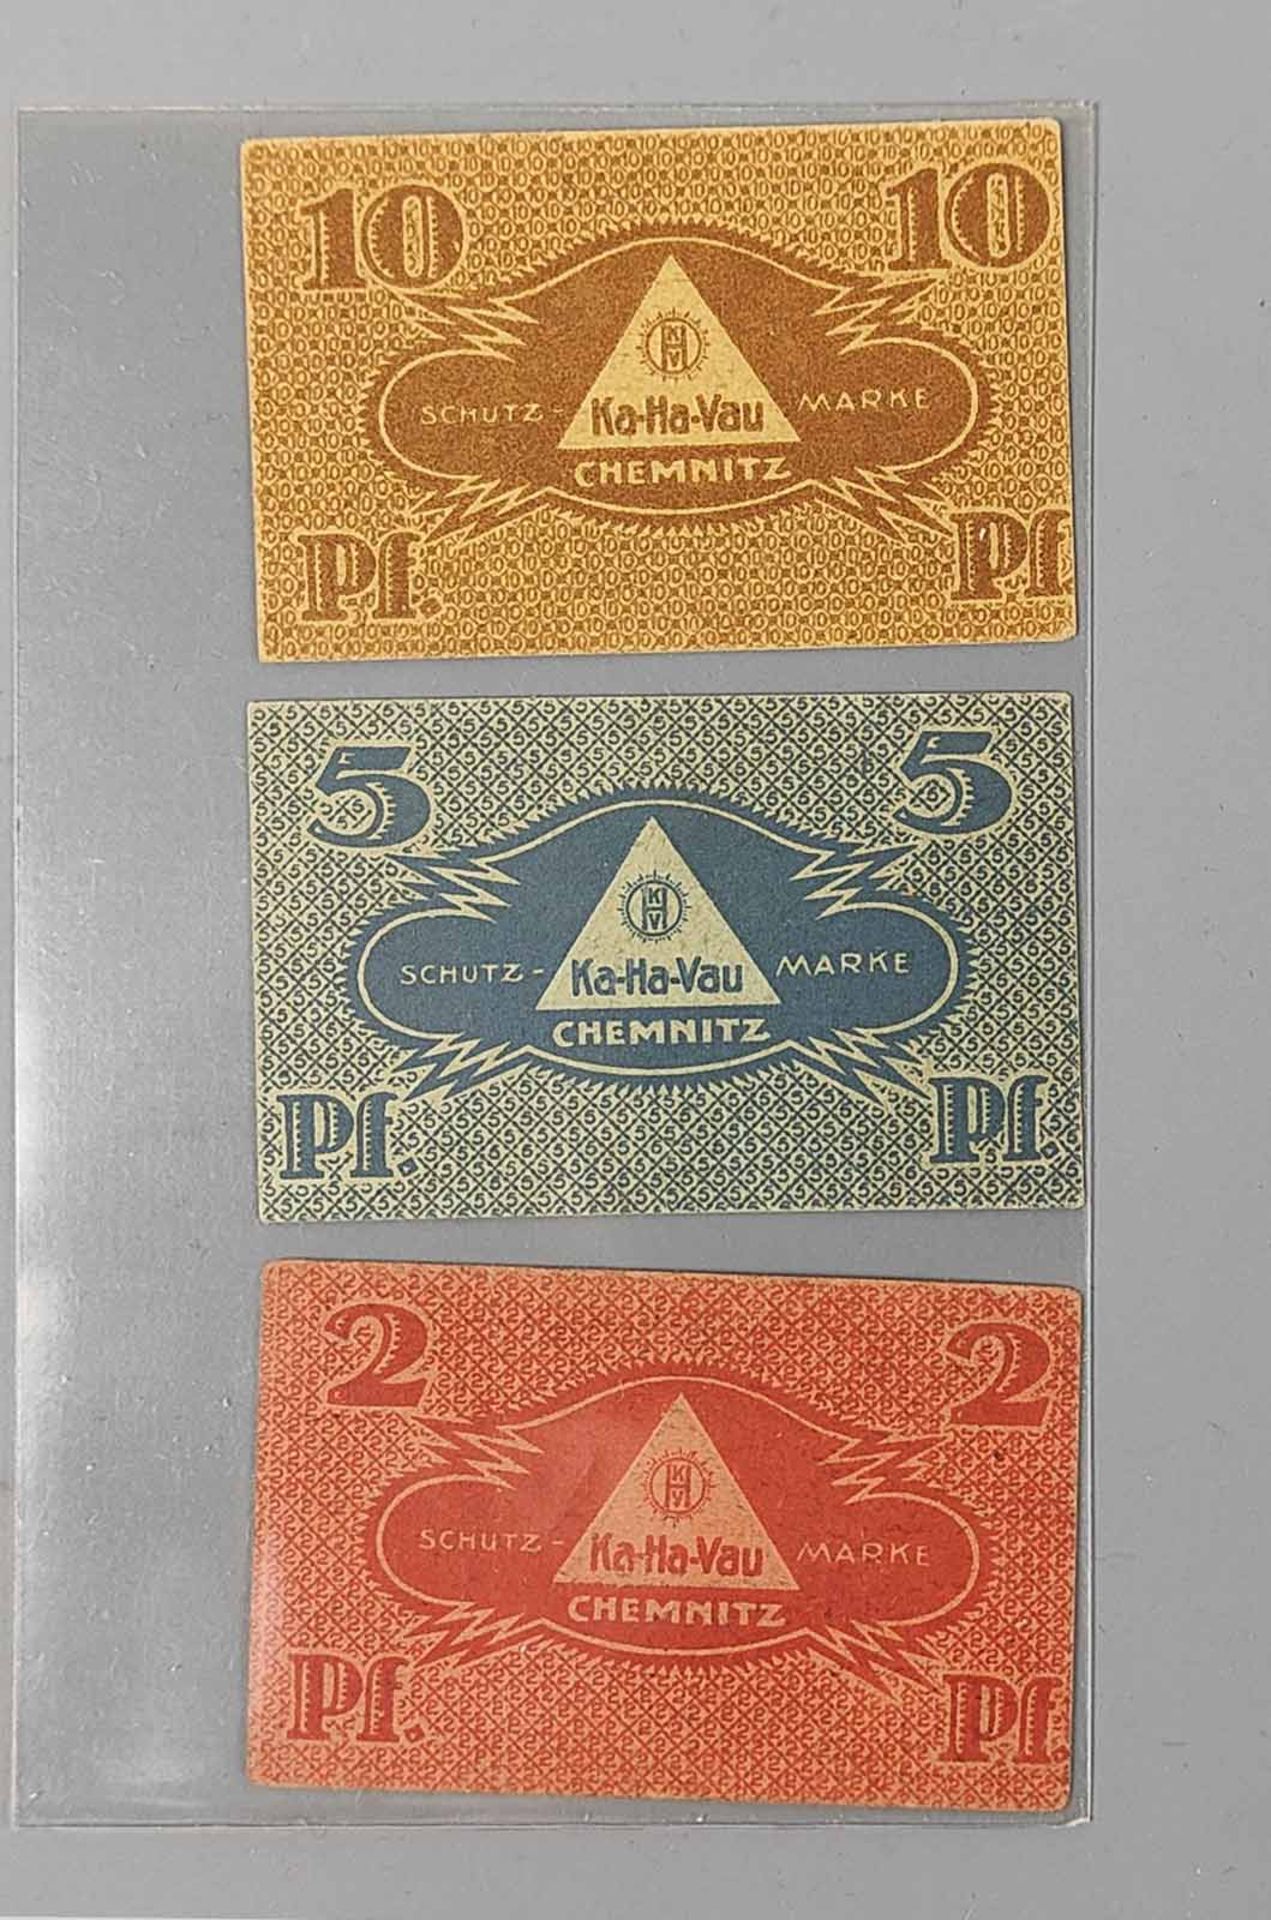 2, 5 und 10 Pfennig Kolonialwaren-Handels-Verein - Image 2 of 2